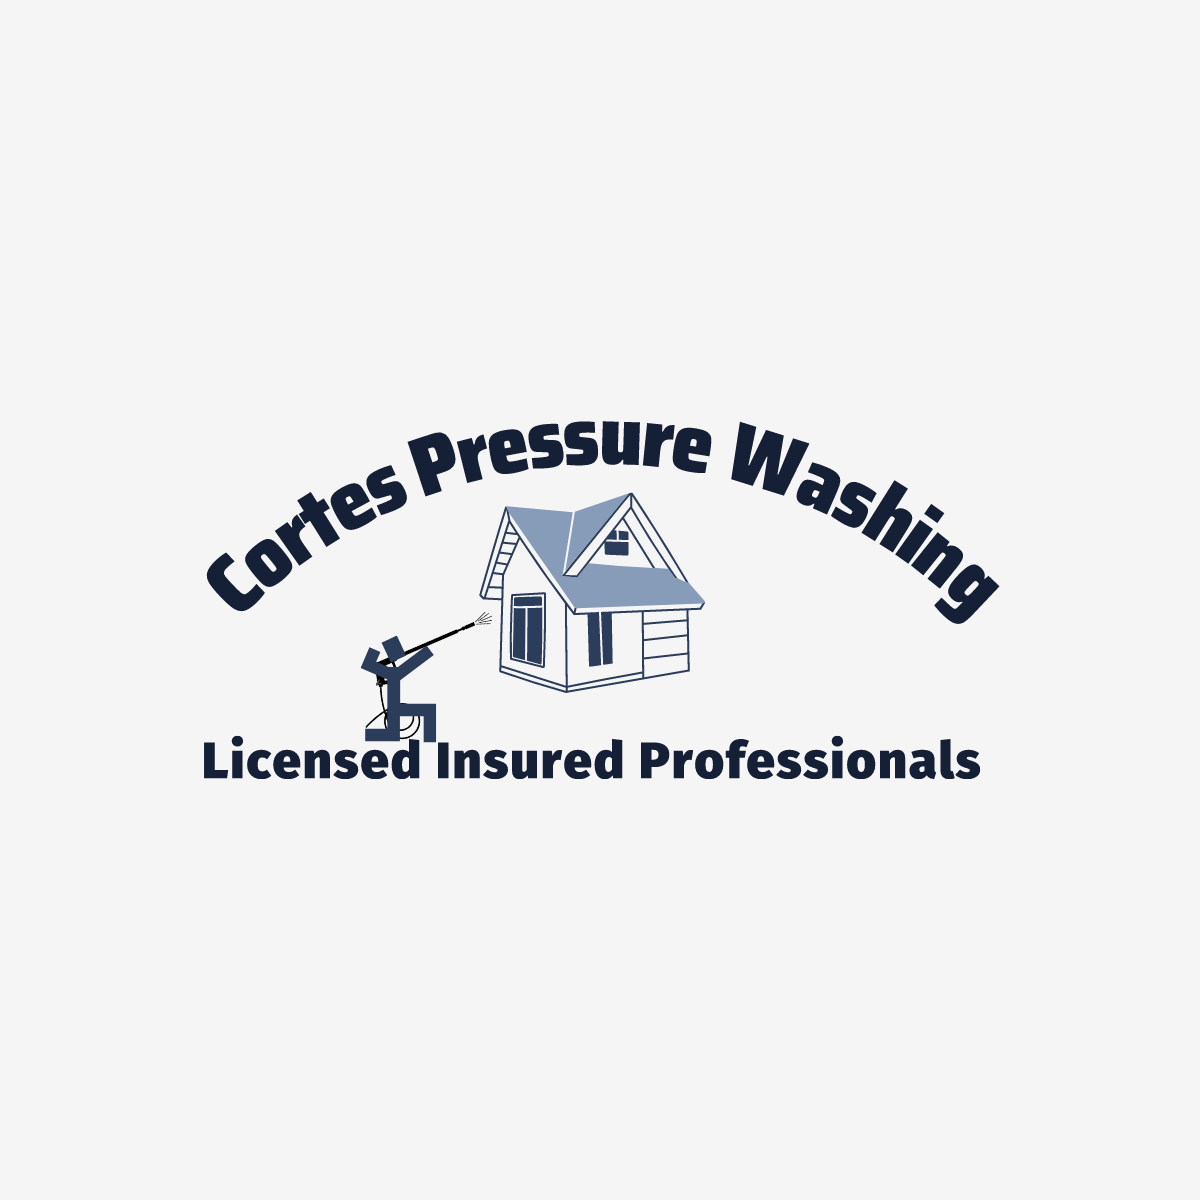 CortesPressureWashing Logo